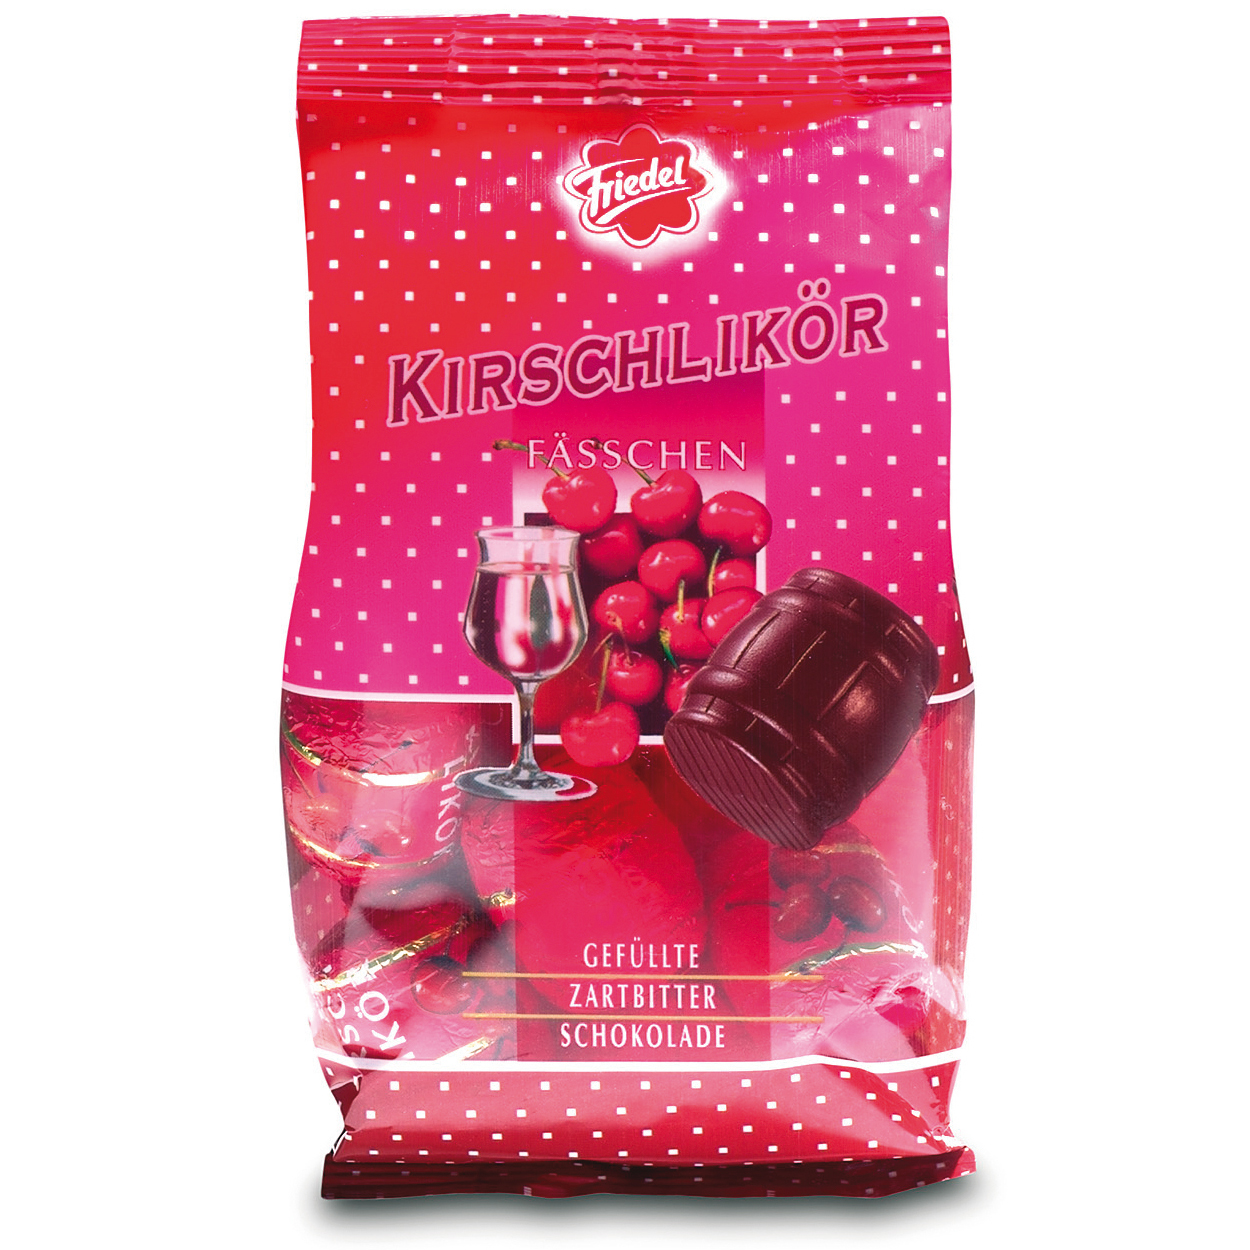 Friedel Kirschlikör-Fässchen | Online kaufen im World of Sweets Shop